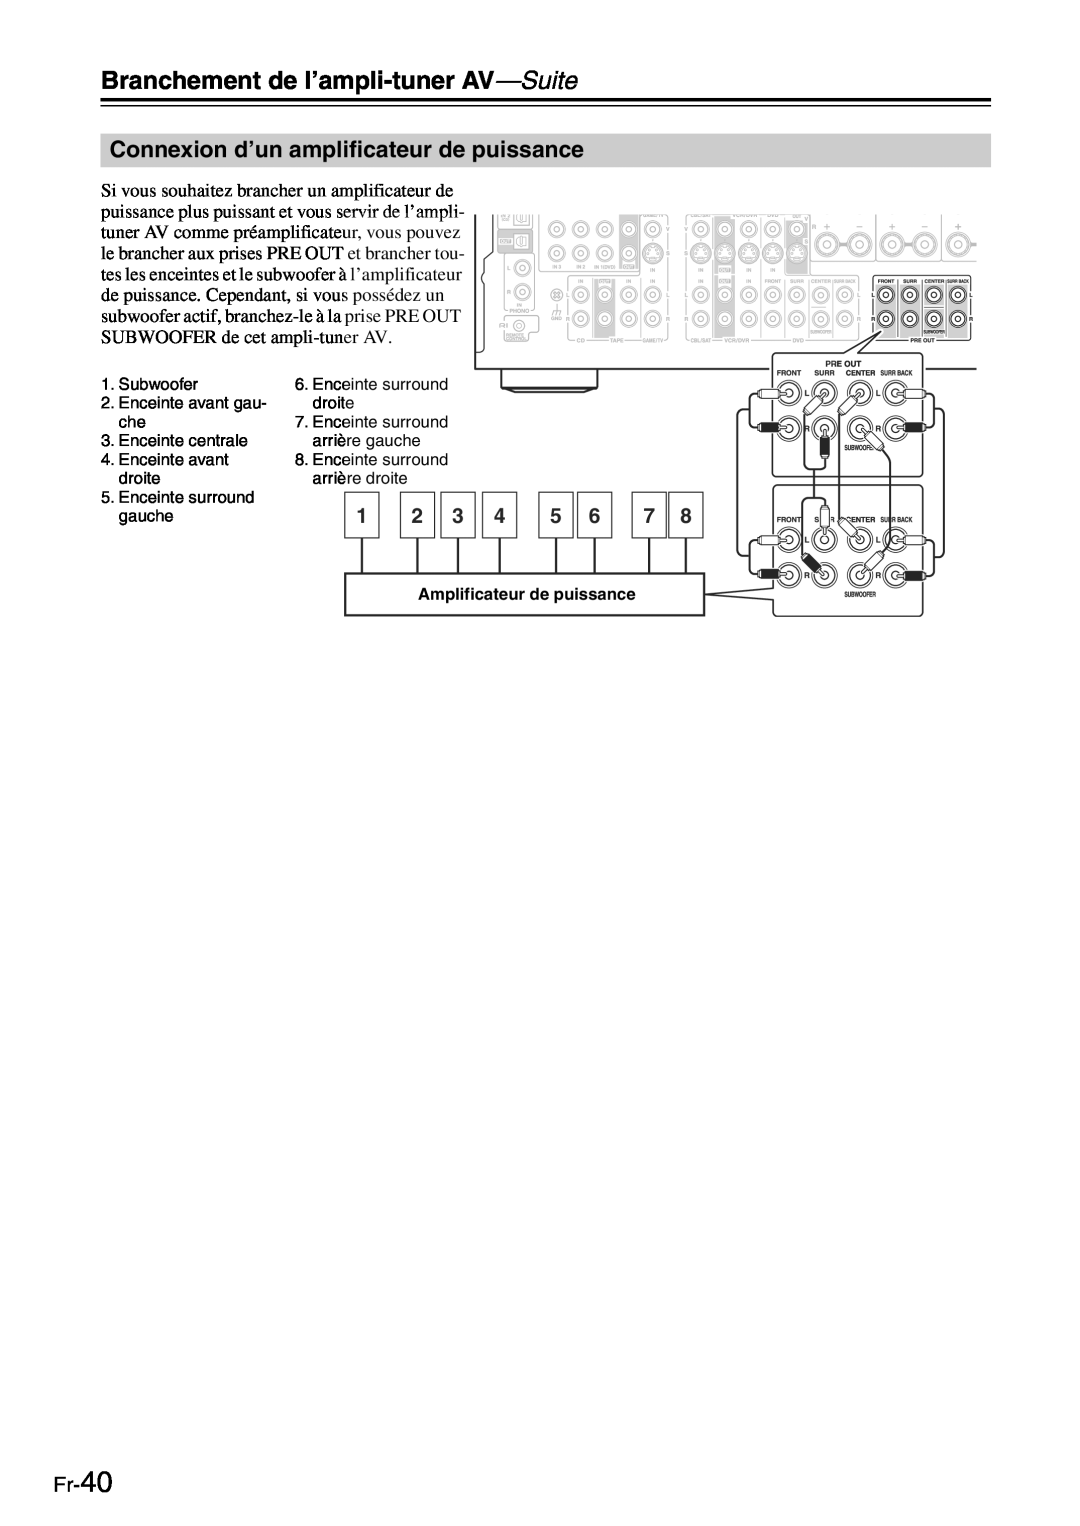 Onkyo TX-SR705 manual Connexion d’un amplificateur de puissance, Fr-40, Branchement de l’ampli-tuner AV—Suite 